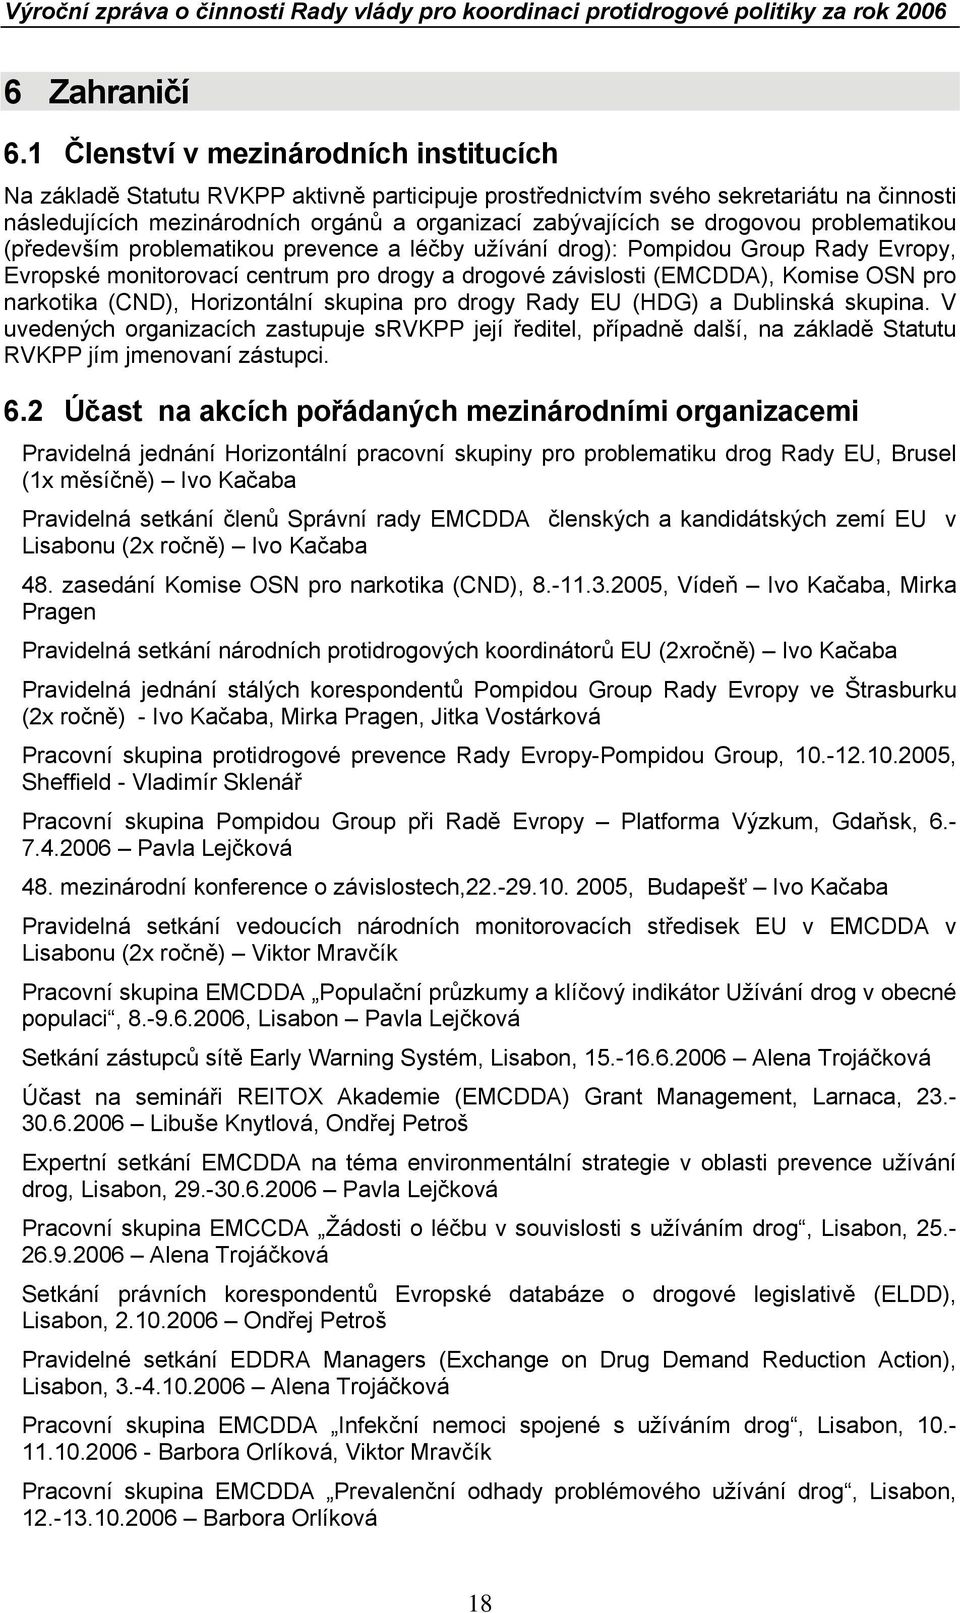 drogovou problematikou (především problematikou prevence a léčby užívání drog): Pompidou Group Rady Evropy, Evropské monitorovací centrum pro drogy a drogové závislosti (EMCDDA), Komise OSN pro